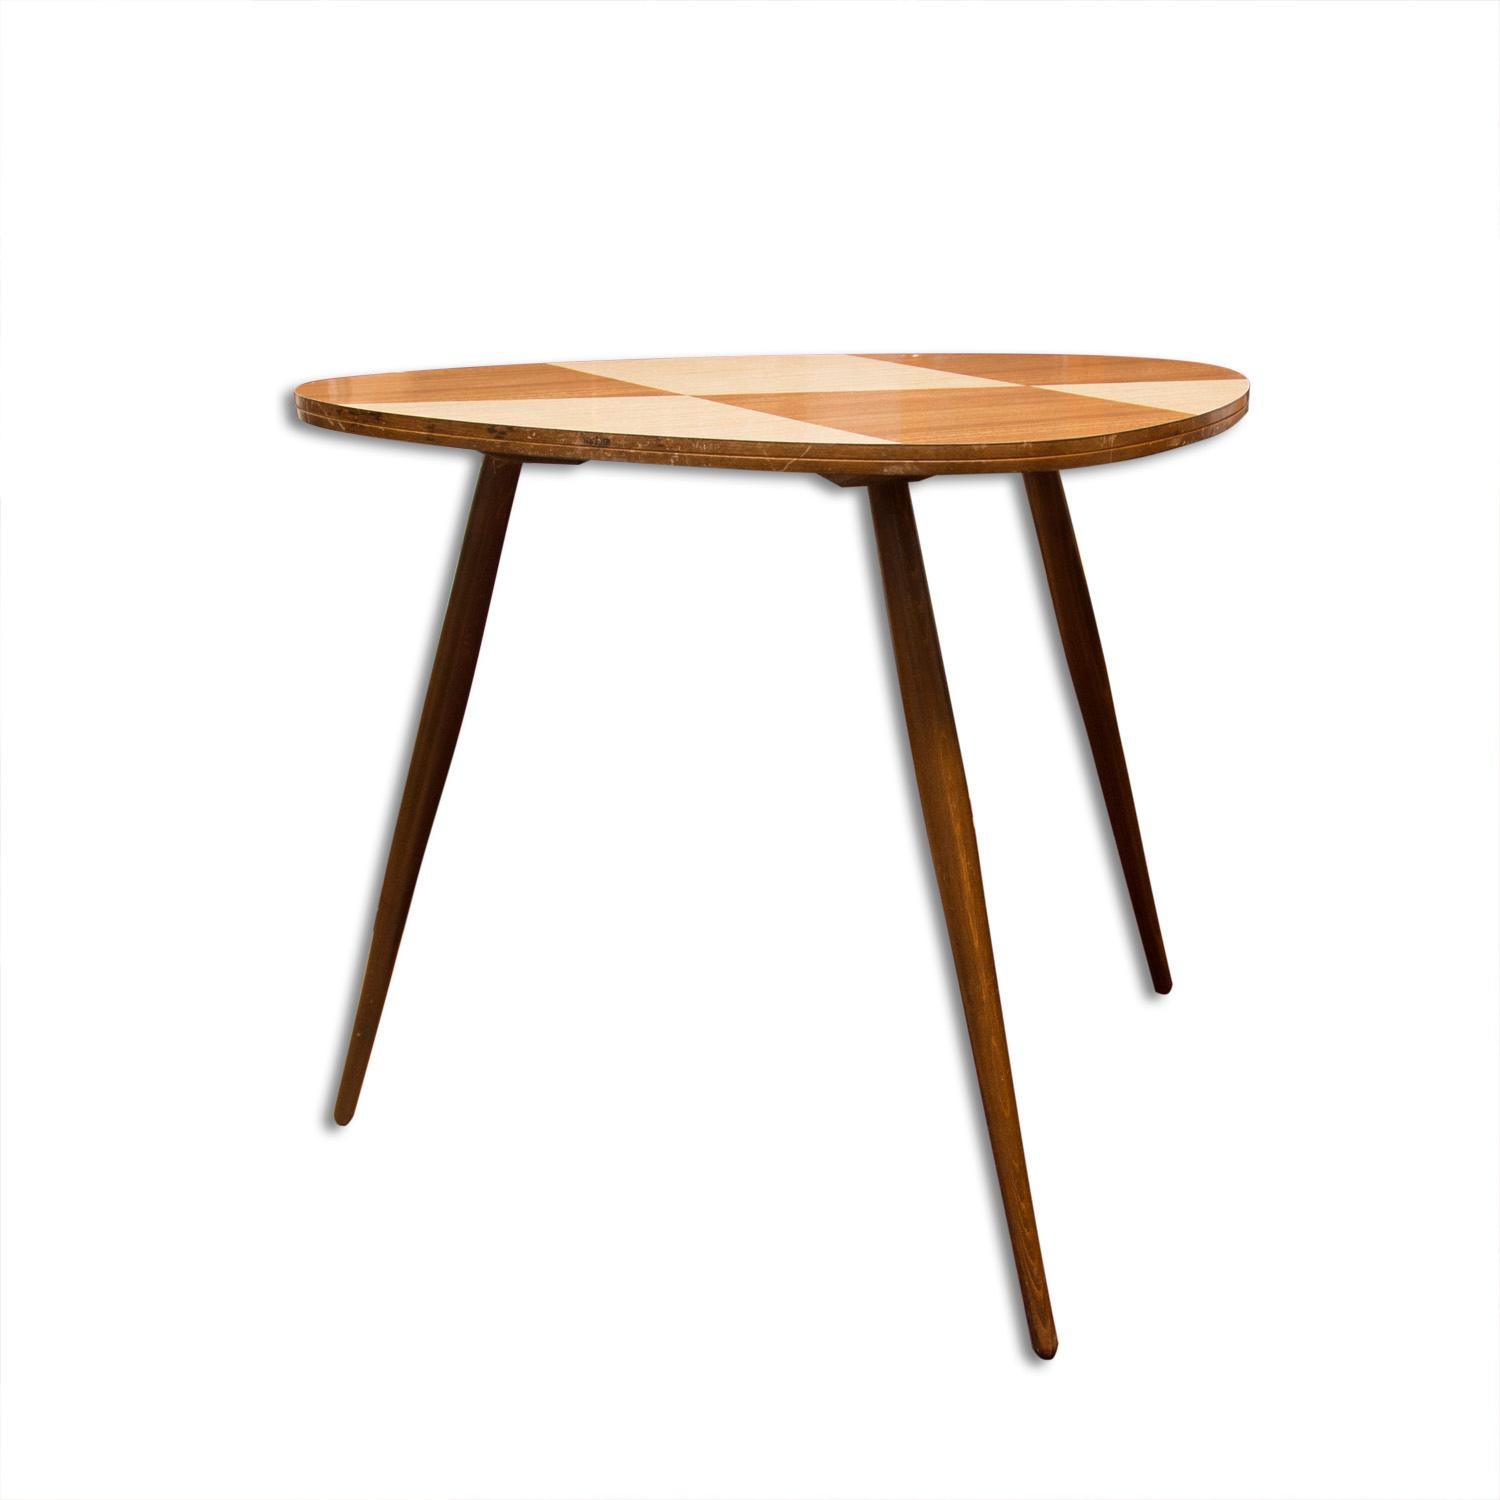 Table d'appoint ou table basse de couleur Midcentury. Matériaux : Formica, bois de hêtre. Une pièce rétro cool. Objet vintage en très bon état.

   